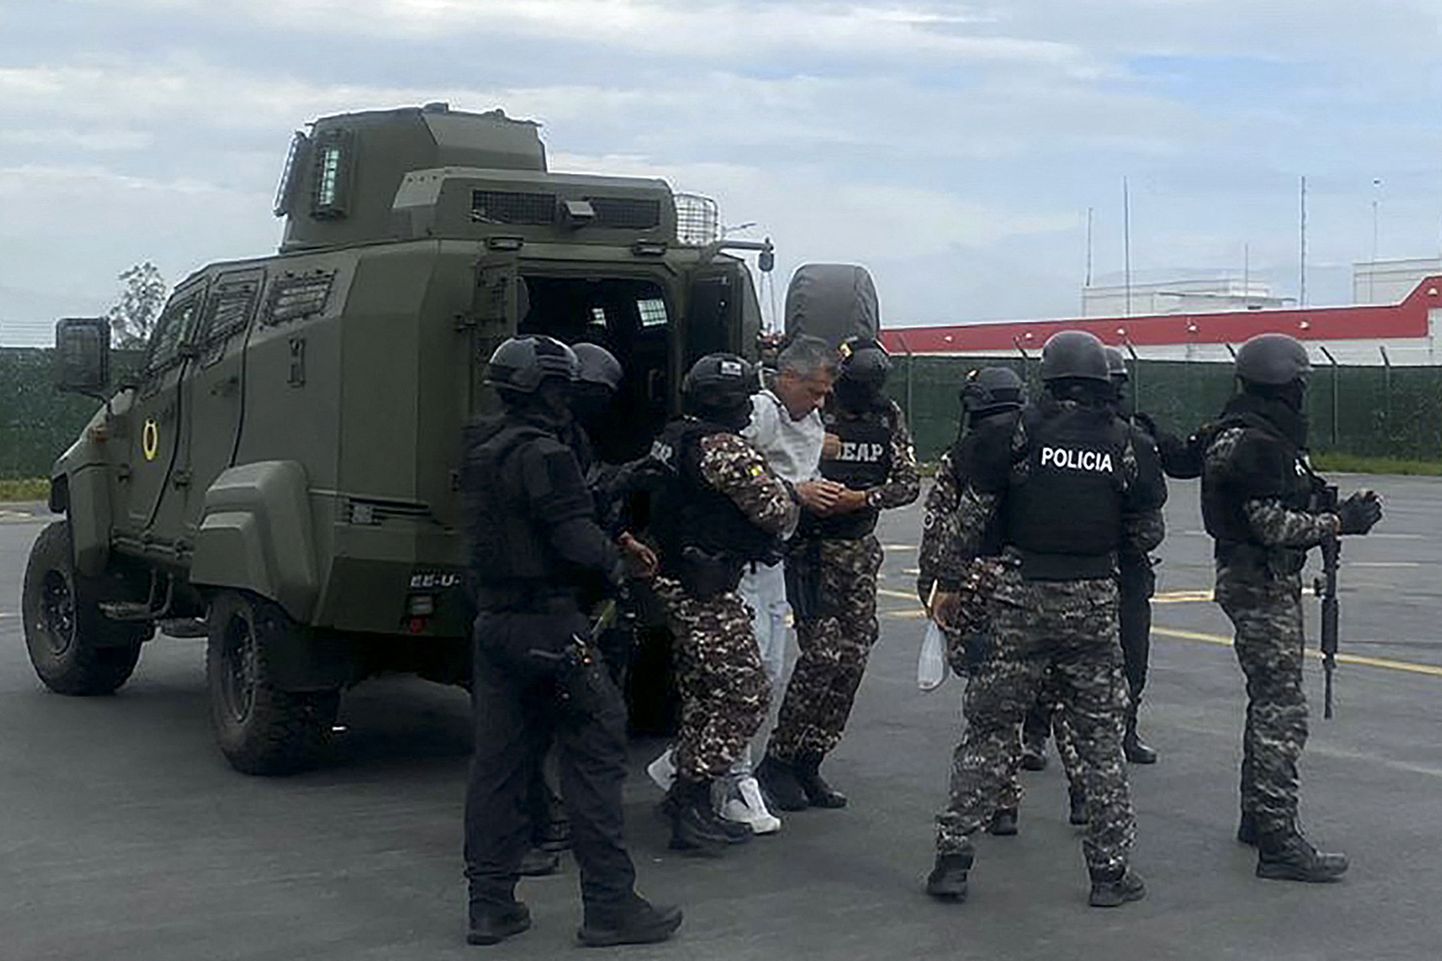 Ecuadori politsei jagatud fotol on näha endist asepresidenti Jorge Glasi, kes pärast skandaalset haarangut Mehhiko suursaatkonna territooriumile toimetati edasi range režiimiga La Roca vanglasse Guayaquilis.